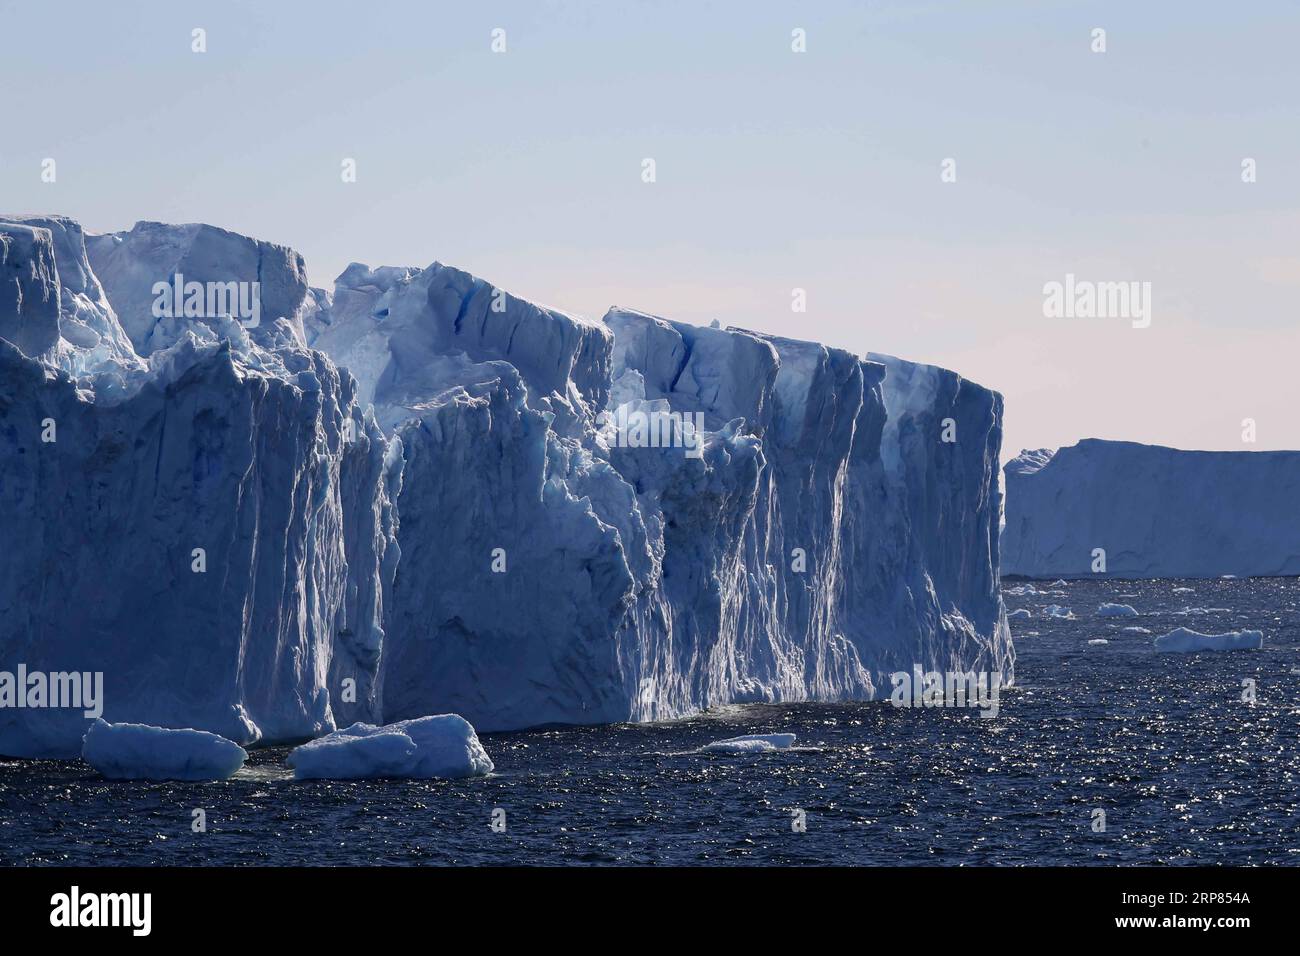 (190218) -- AN BORD VON XUELONG, 18. Februar 2019 (Xinhua) -- Foto vom 14. Februar 2019 zeigt einen Eisberg auf dem Meer in der Nähe der Zhongshan Station, einer chinesischen Forschungsbasis in der Antarktis. Der Bahnhof Zhongshan wurde im Februar 1989 eingerichtet. Im Umkreis von zehn Kilometern zur Station sind Eisschilde, Gletscher und Eisberge zu sehen. (Xinhua/Liu Shiping) ANTARKTIS-CHINA-ZHONGSHAN STATION PUBLICATIONxNOTxINxCHN Stockfoto